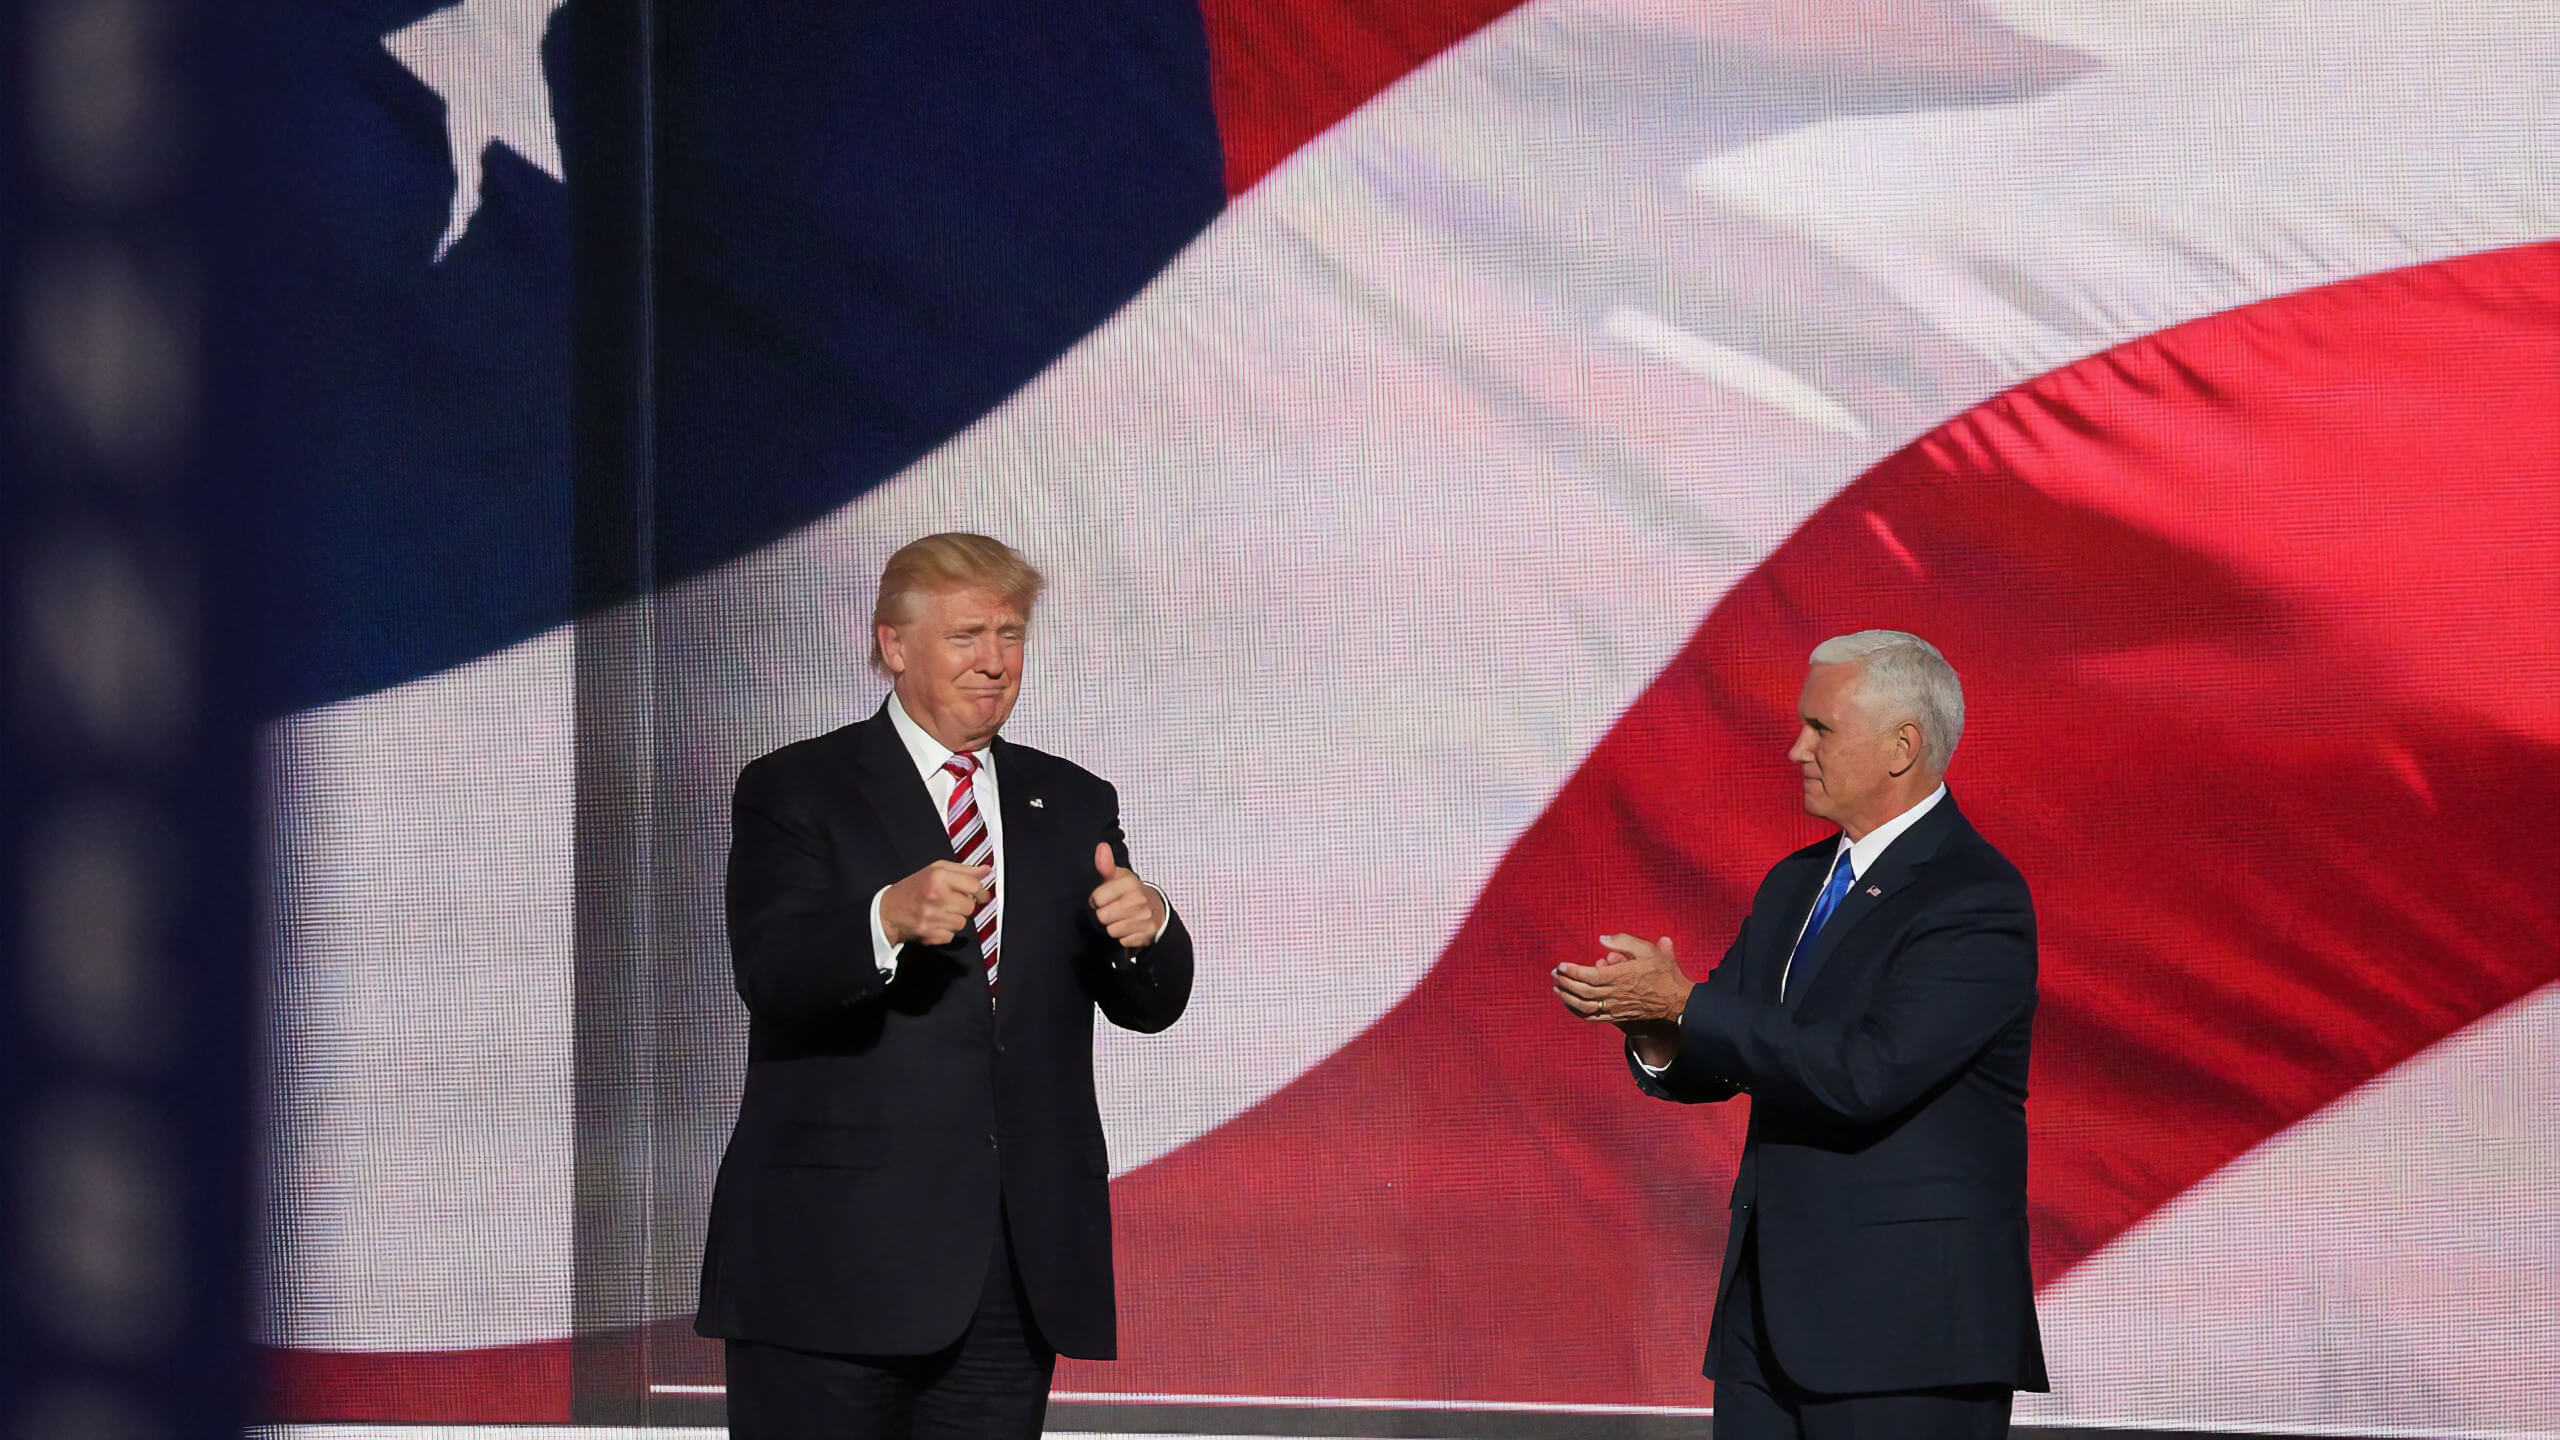 US-Präsident Donald Trumps angebliche Errungenschaften während seiner Amtszeit im Faktencheck (Symbolbild: Trump (links) und Mike Pence: Unsplash / History in HD)